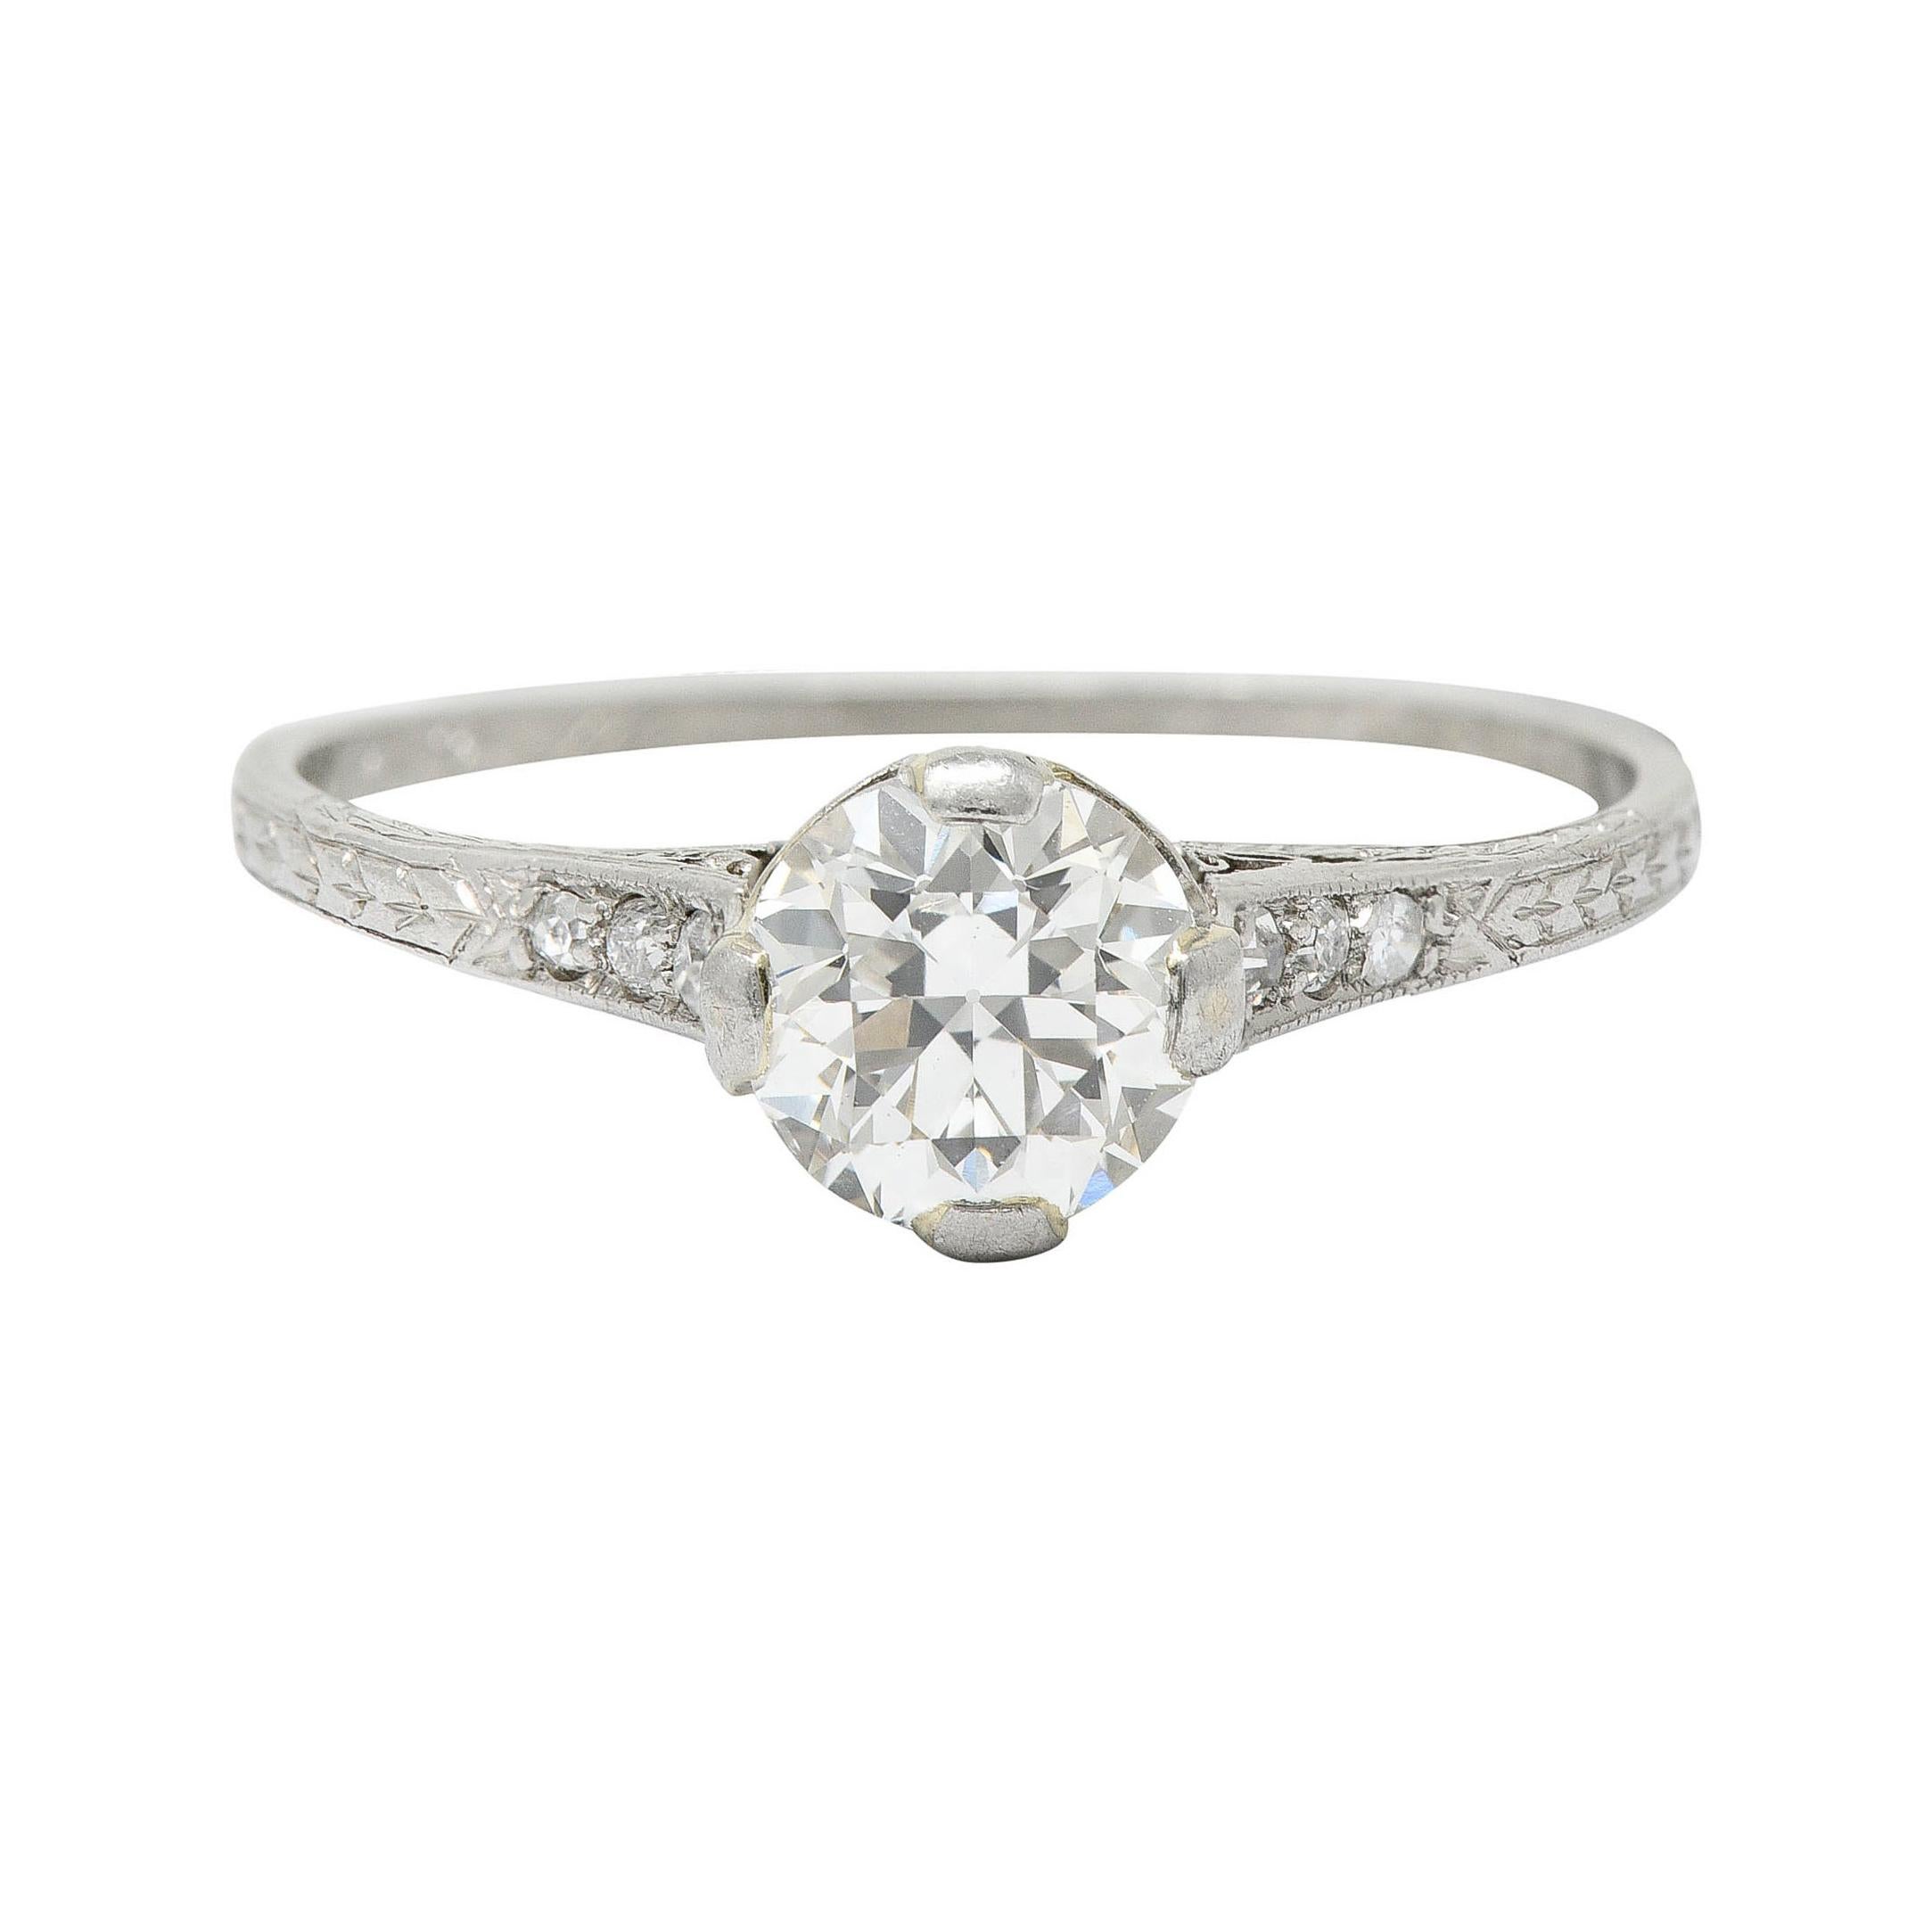 1922 Art Deco 0.90 Carat Diamond Platinum Engagement Ring